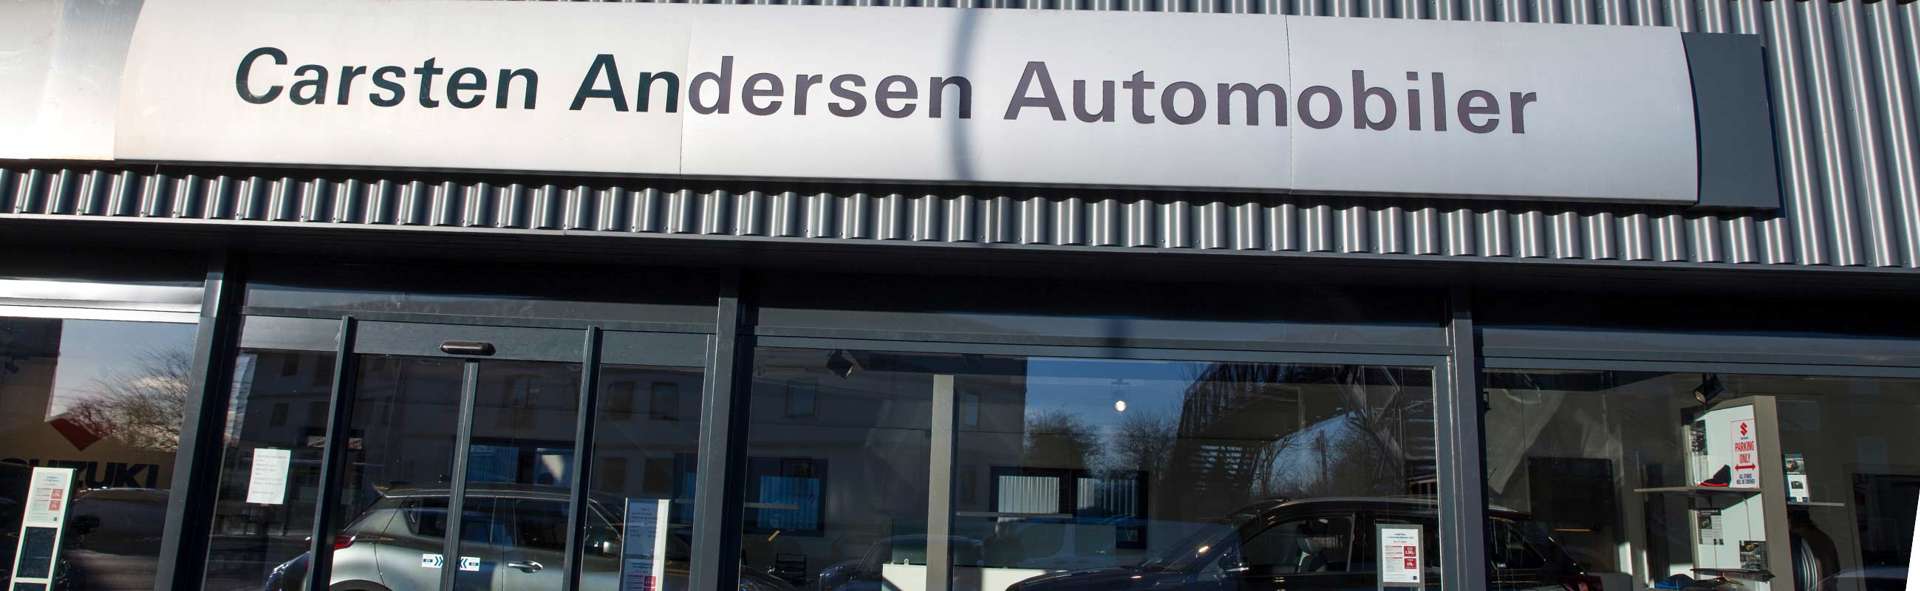 Carsten Andersen Automobiler